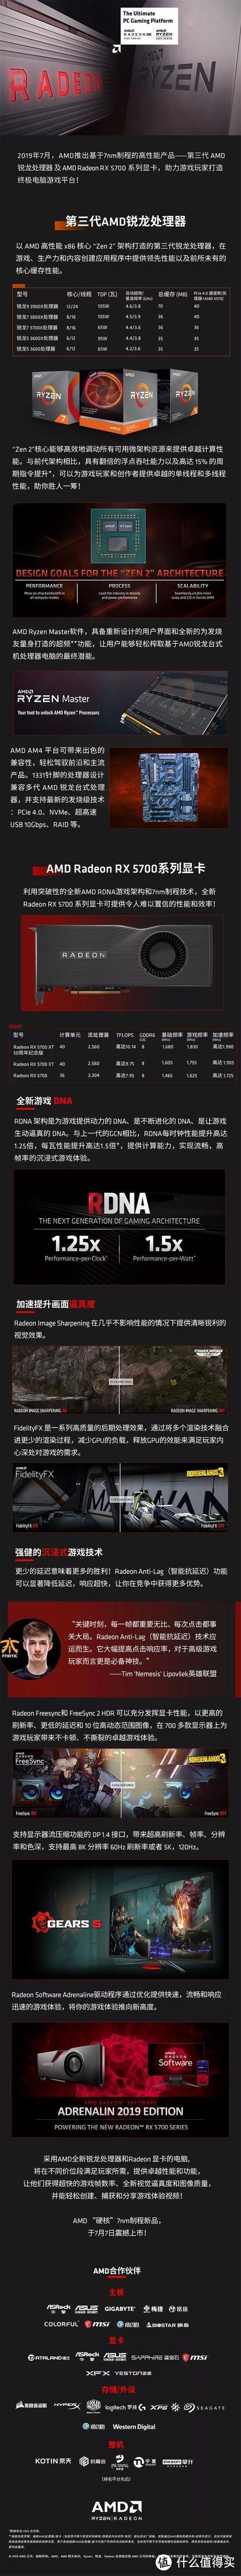 AMD锐龙9 3900X正式上架 RX 5700系列显卡开售